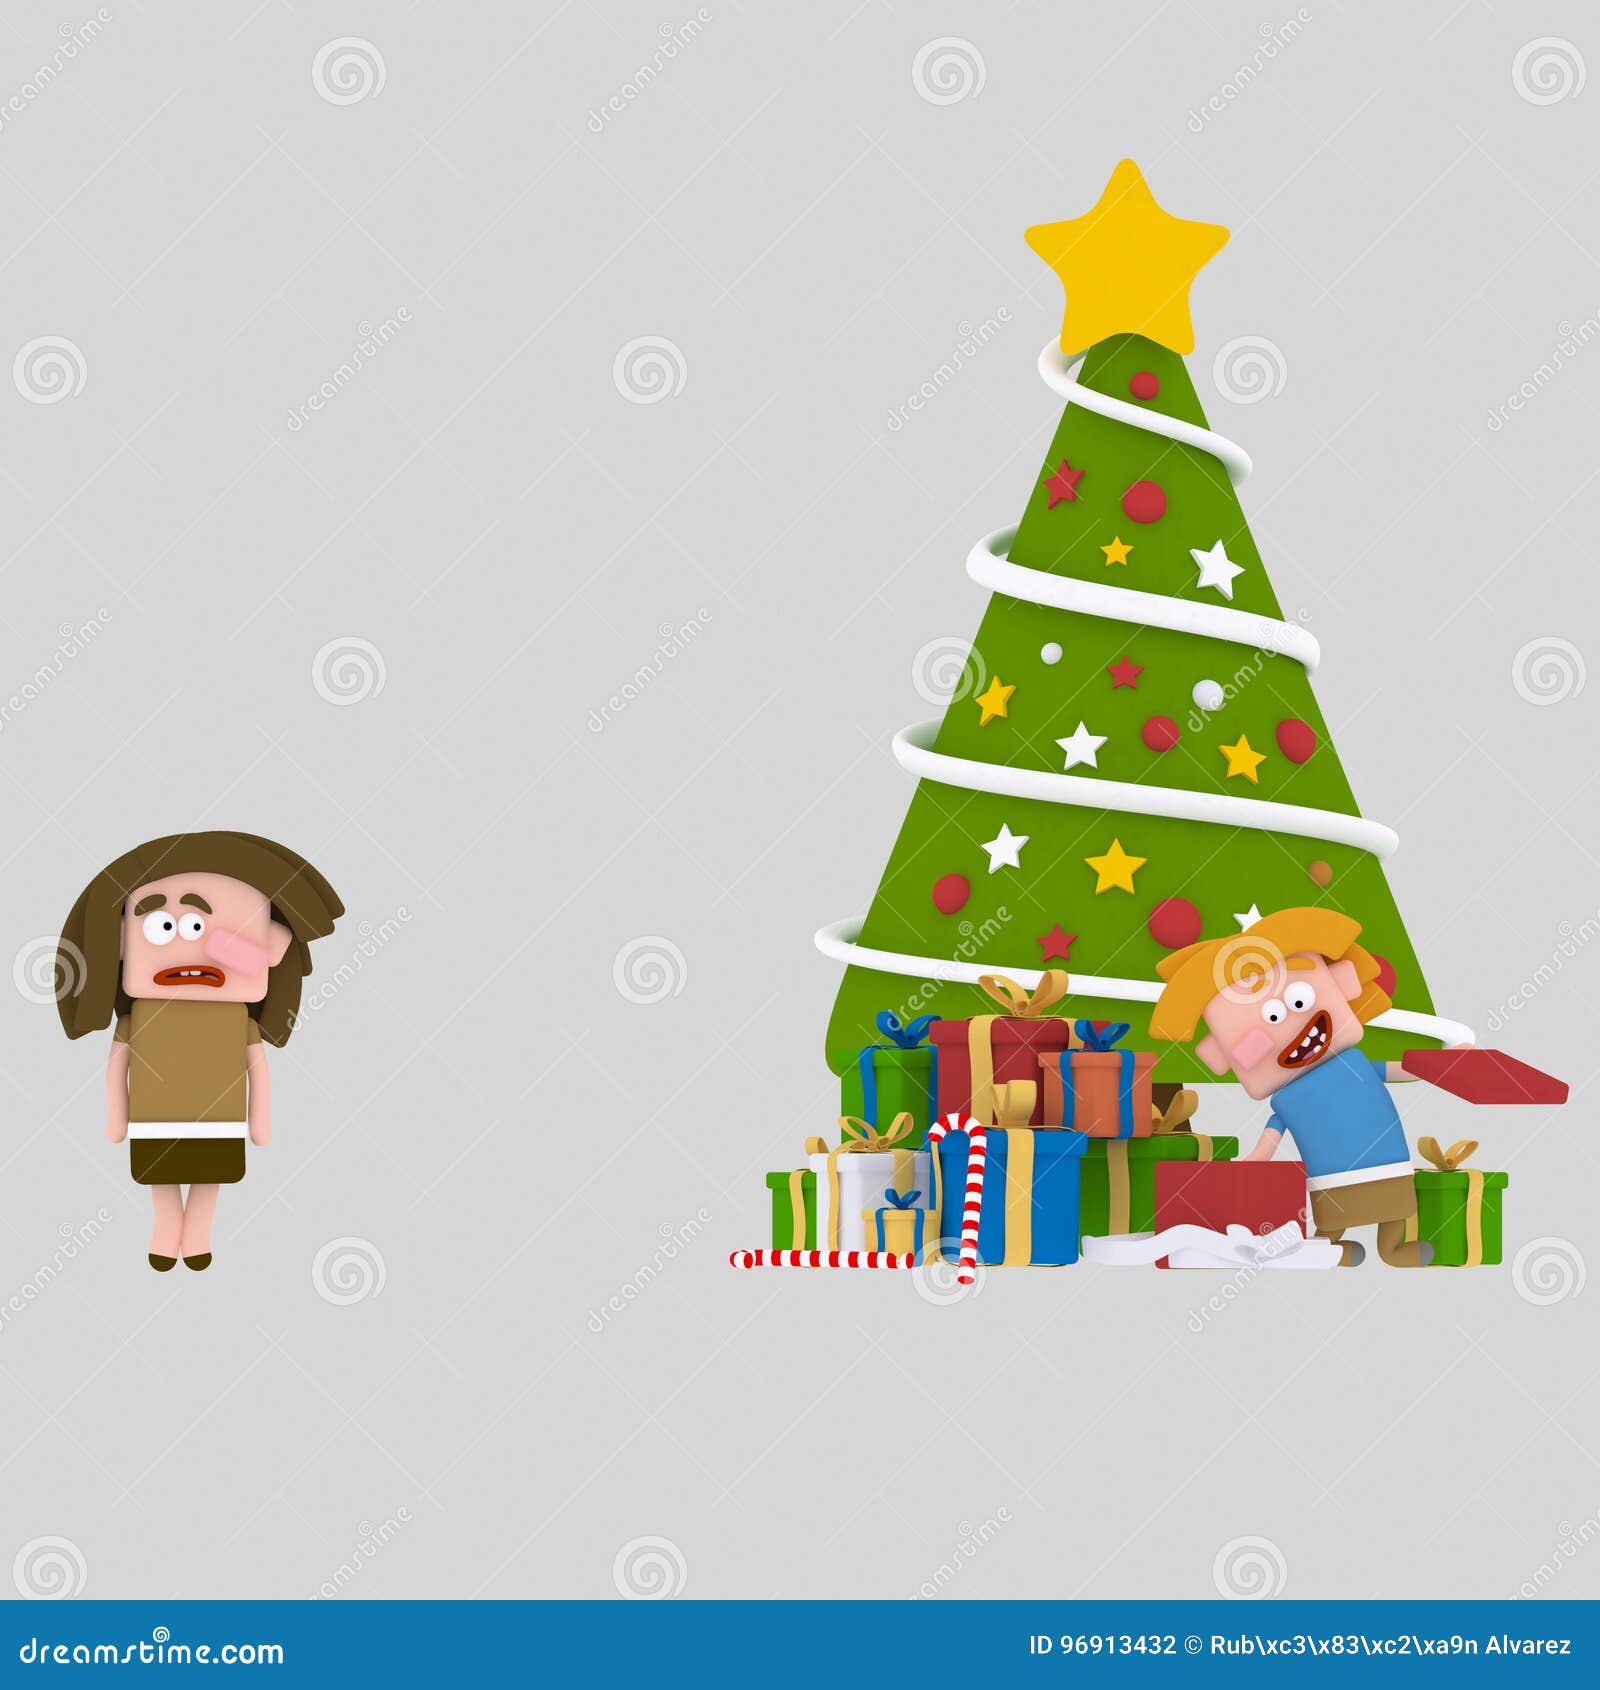 Regali Di Natale Ragazza.Ragazza Povera Senza Regali Di Natale 3d Illustrazione Di Stock Illustrazione Di Albero Triste 96913432